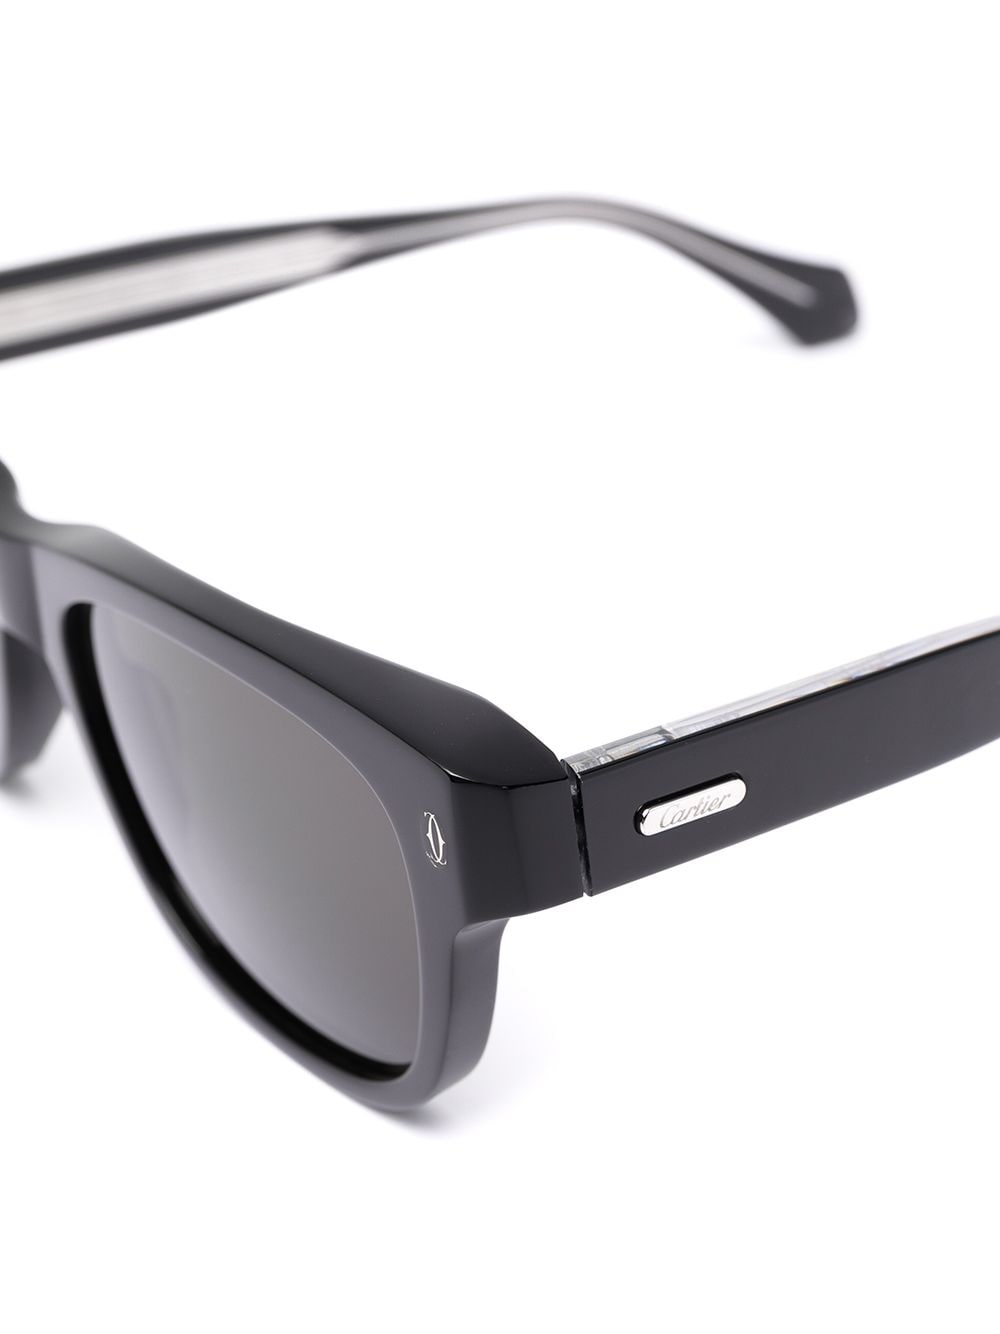 D-frame sunglasses / Black